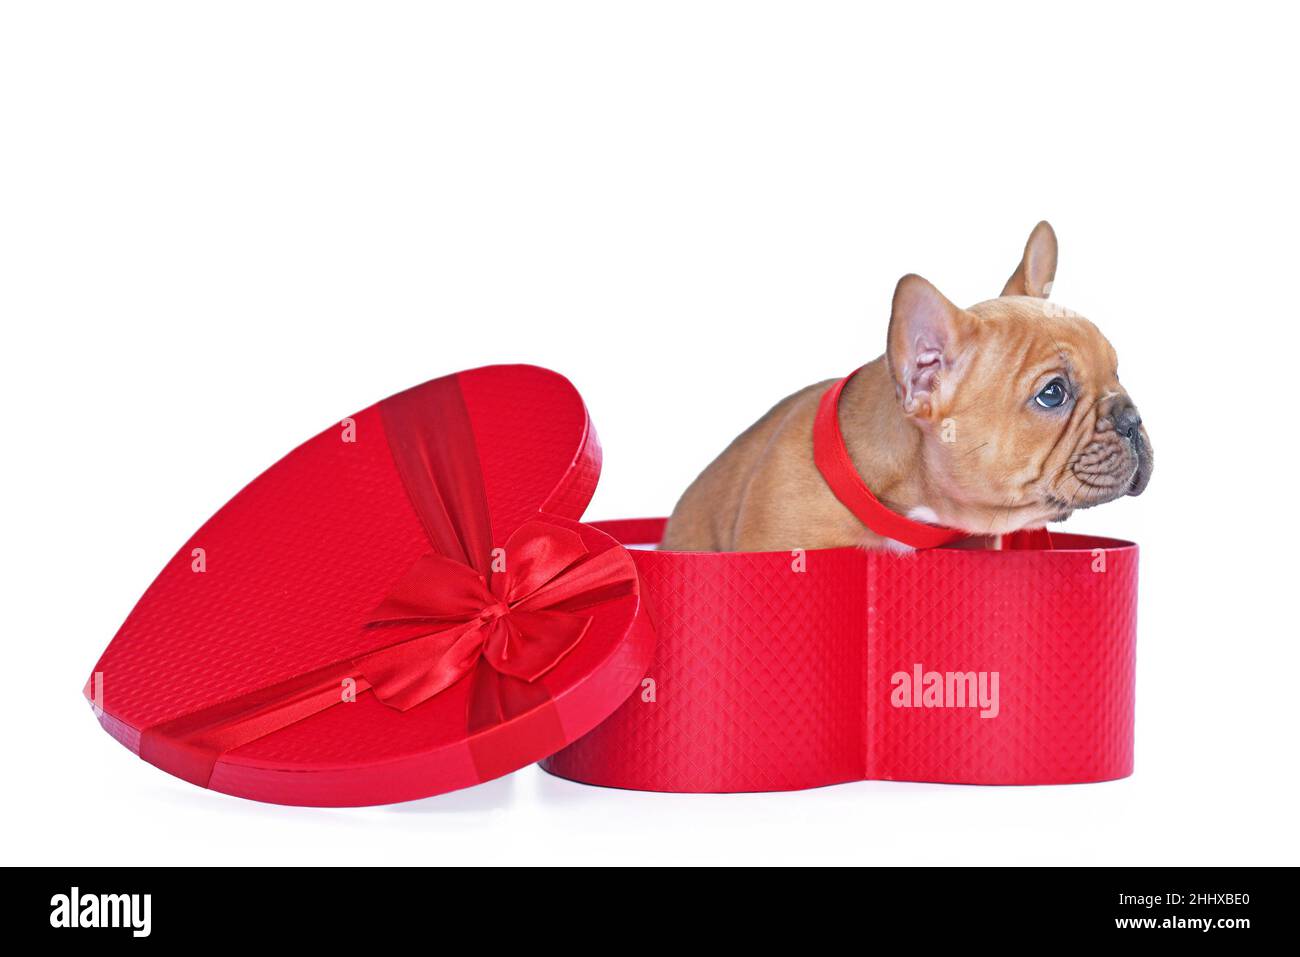 Cucciolo rosso di cane Bulldog francese in scatola regalo San Valentino a forma di cuore rosso su sfondo bianco Foto Stock